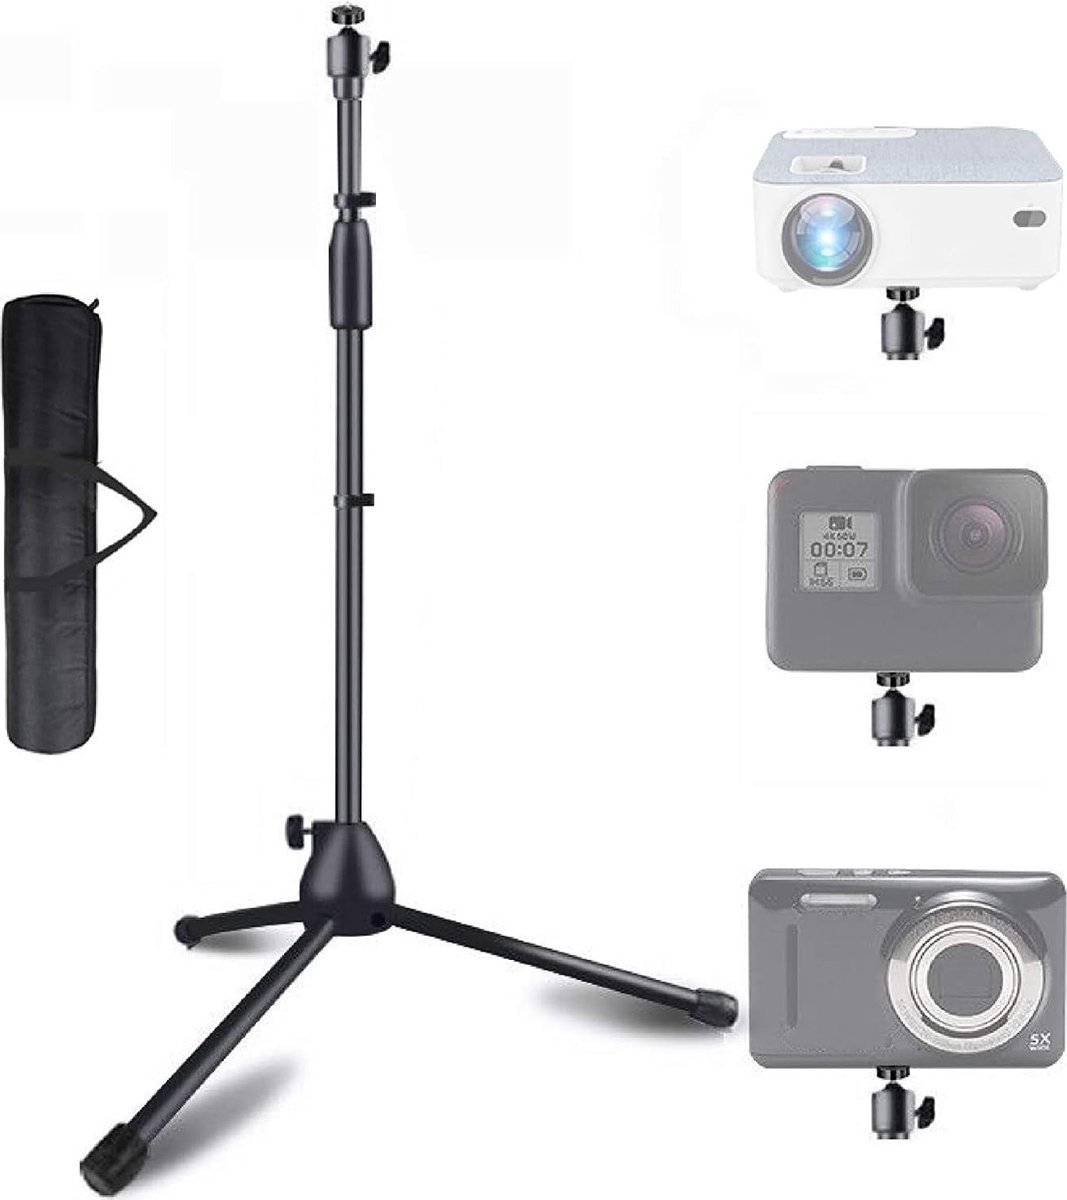 Verstelbare statiefhoogte 83-145 cm, draagvermogen 5 kg, 1/4 inch & 3/8 inch compatibel, 360° draaibare bal, stabiele houder voor miniprojector/DSLR-camera, met draagtas (alleen statief)